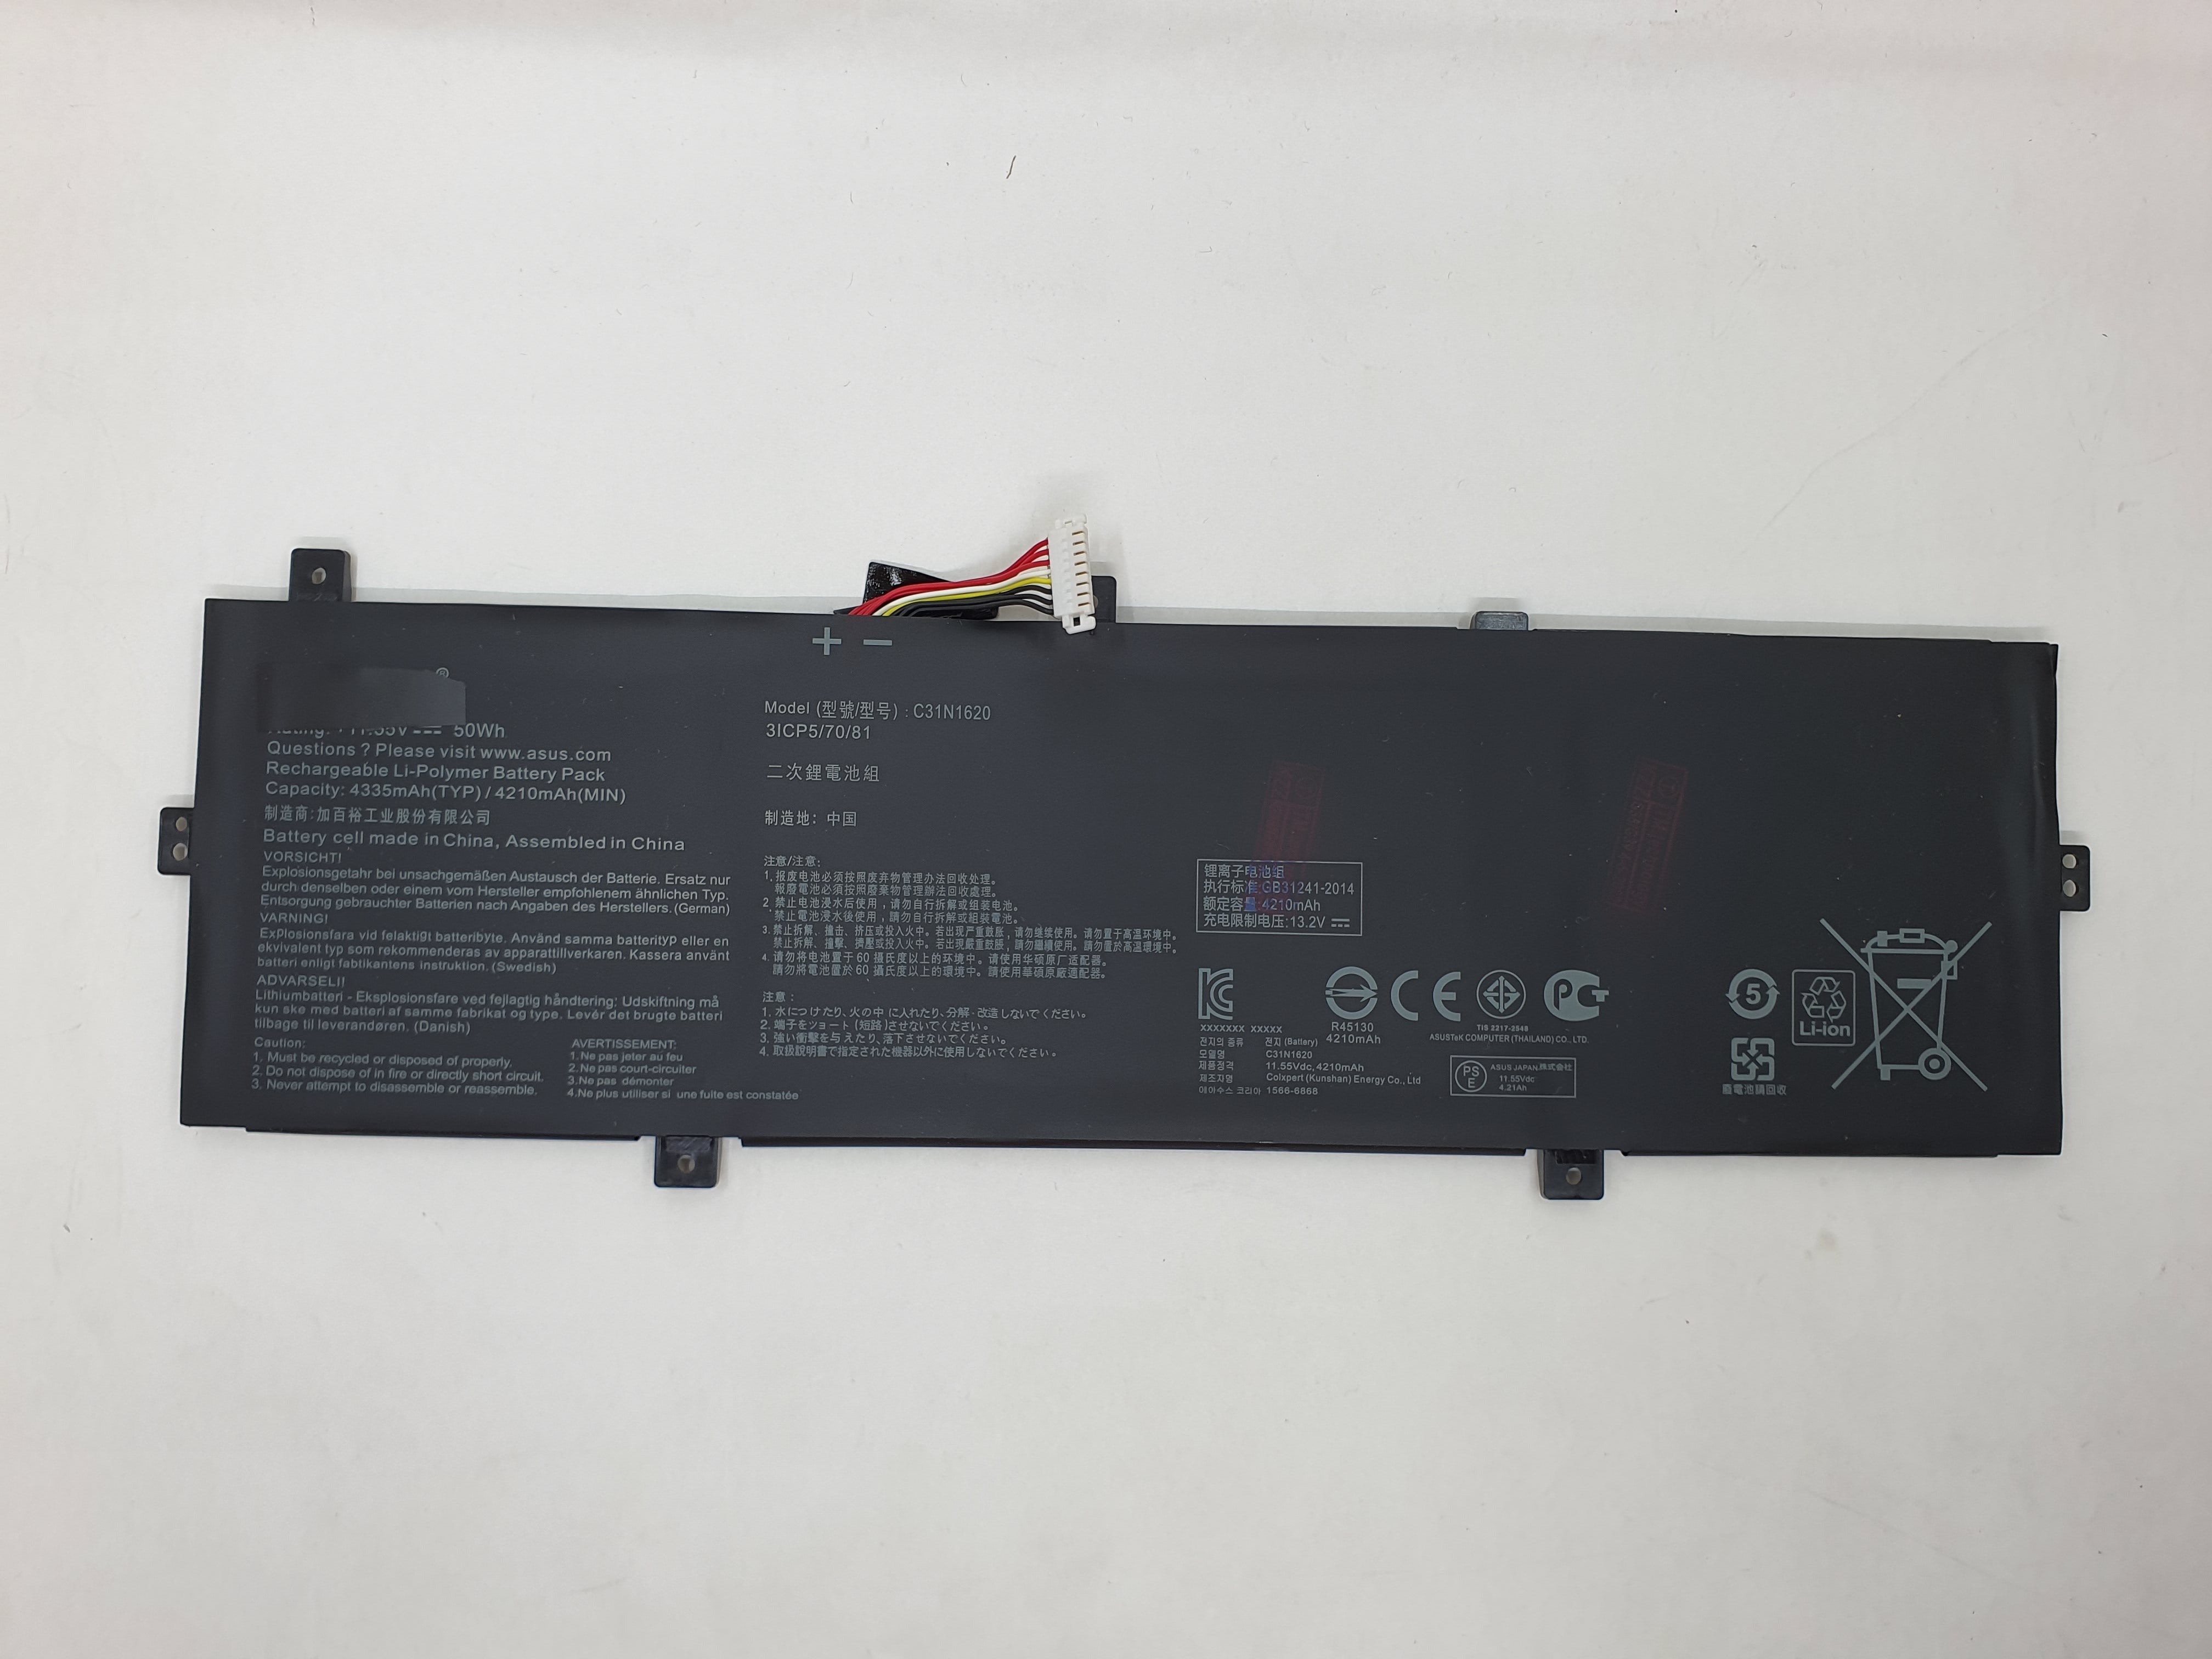 Asus Battery UX430UN A1 for Asus ZenBook UX430UN